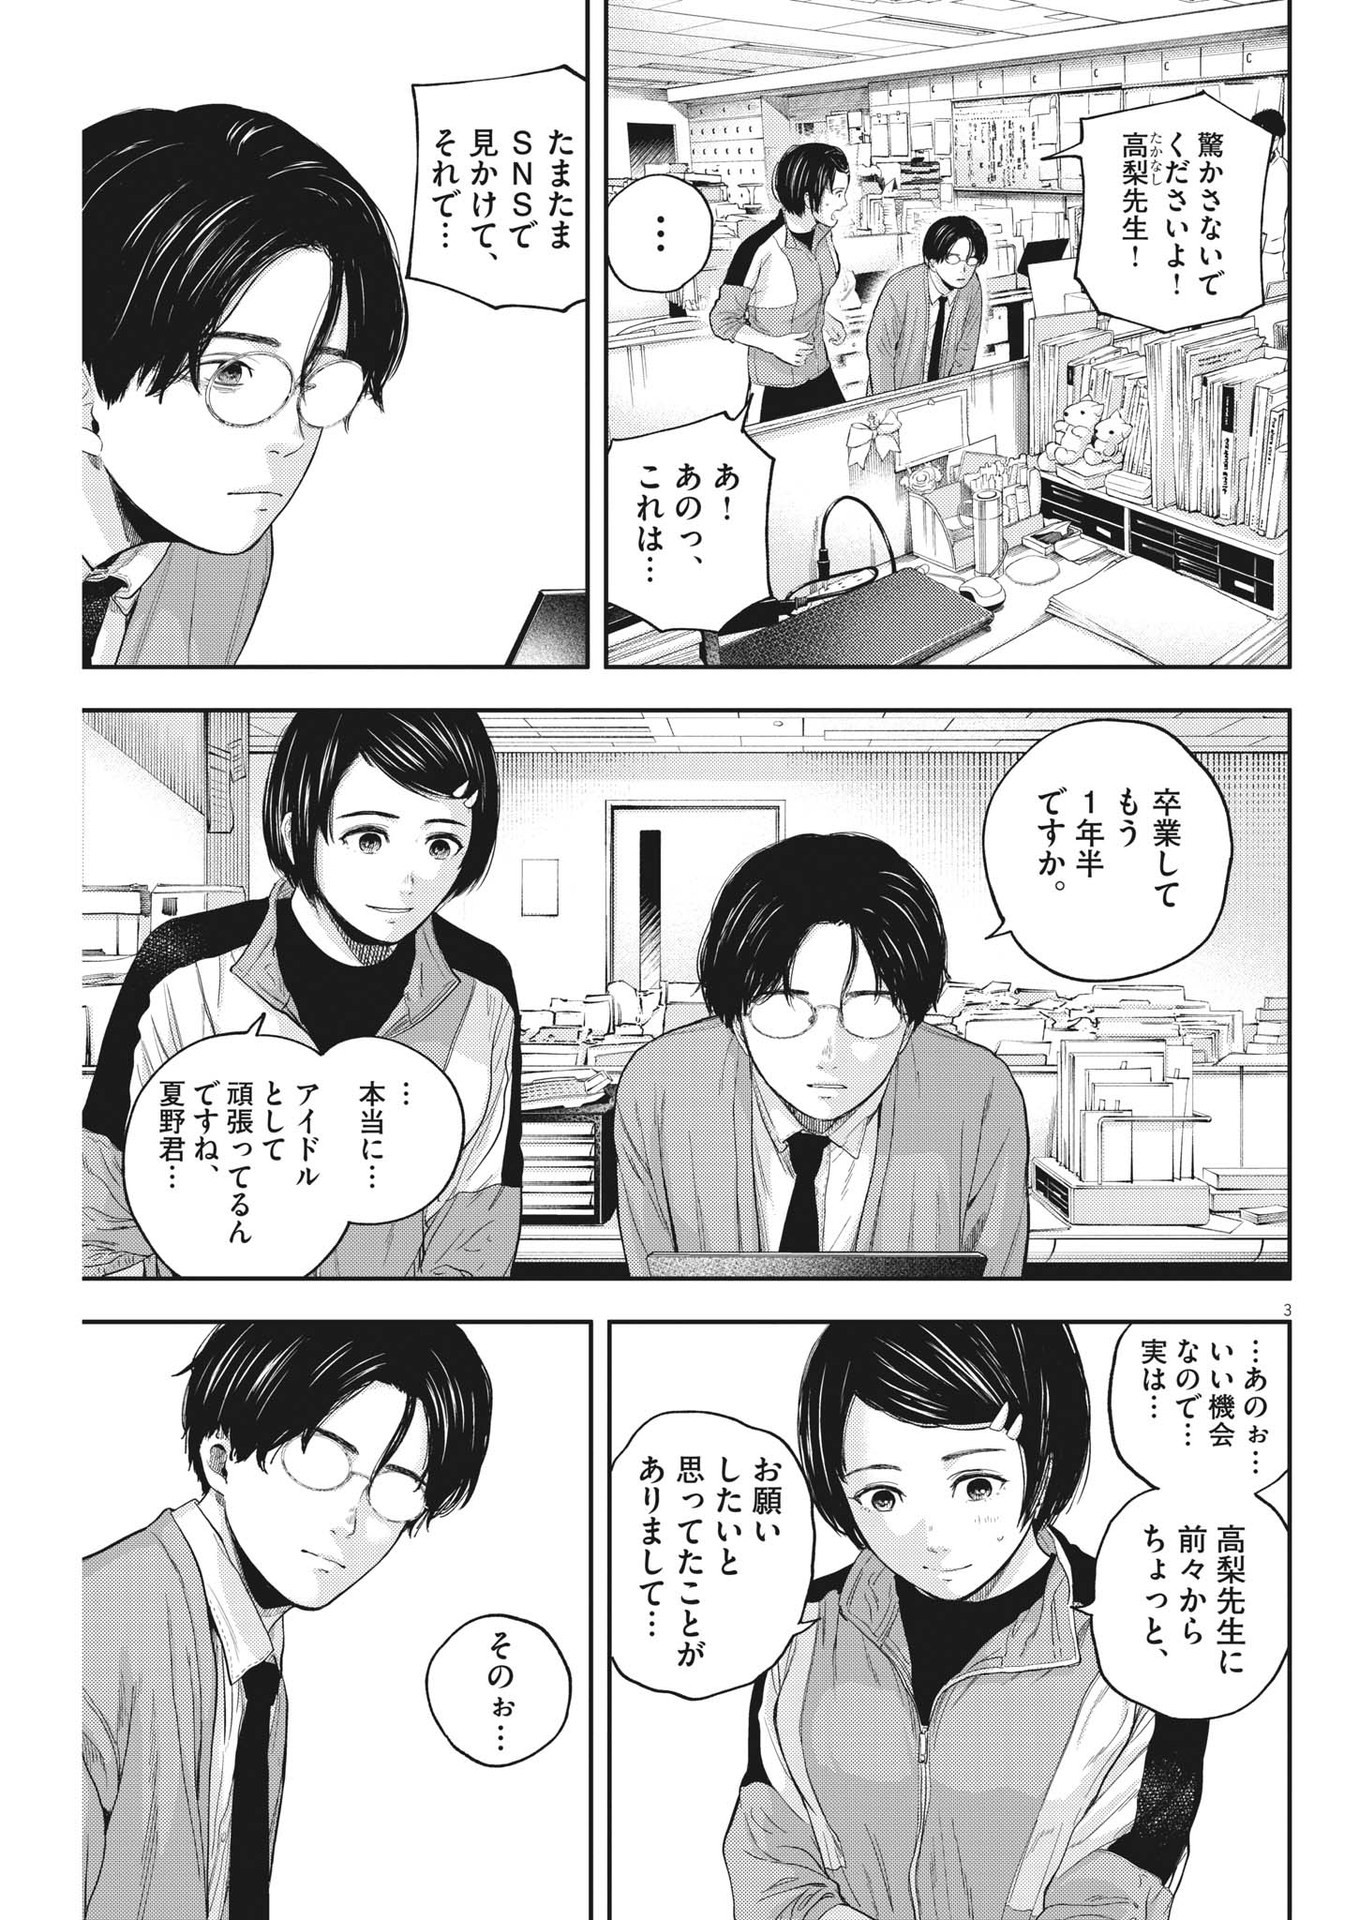 Yumenashi-sensei no Shinroshidou - Chapter 11 - Page 3